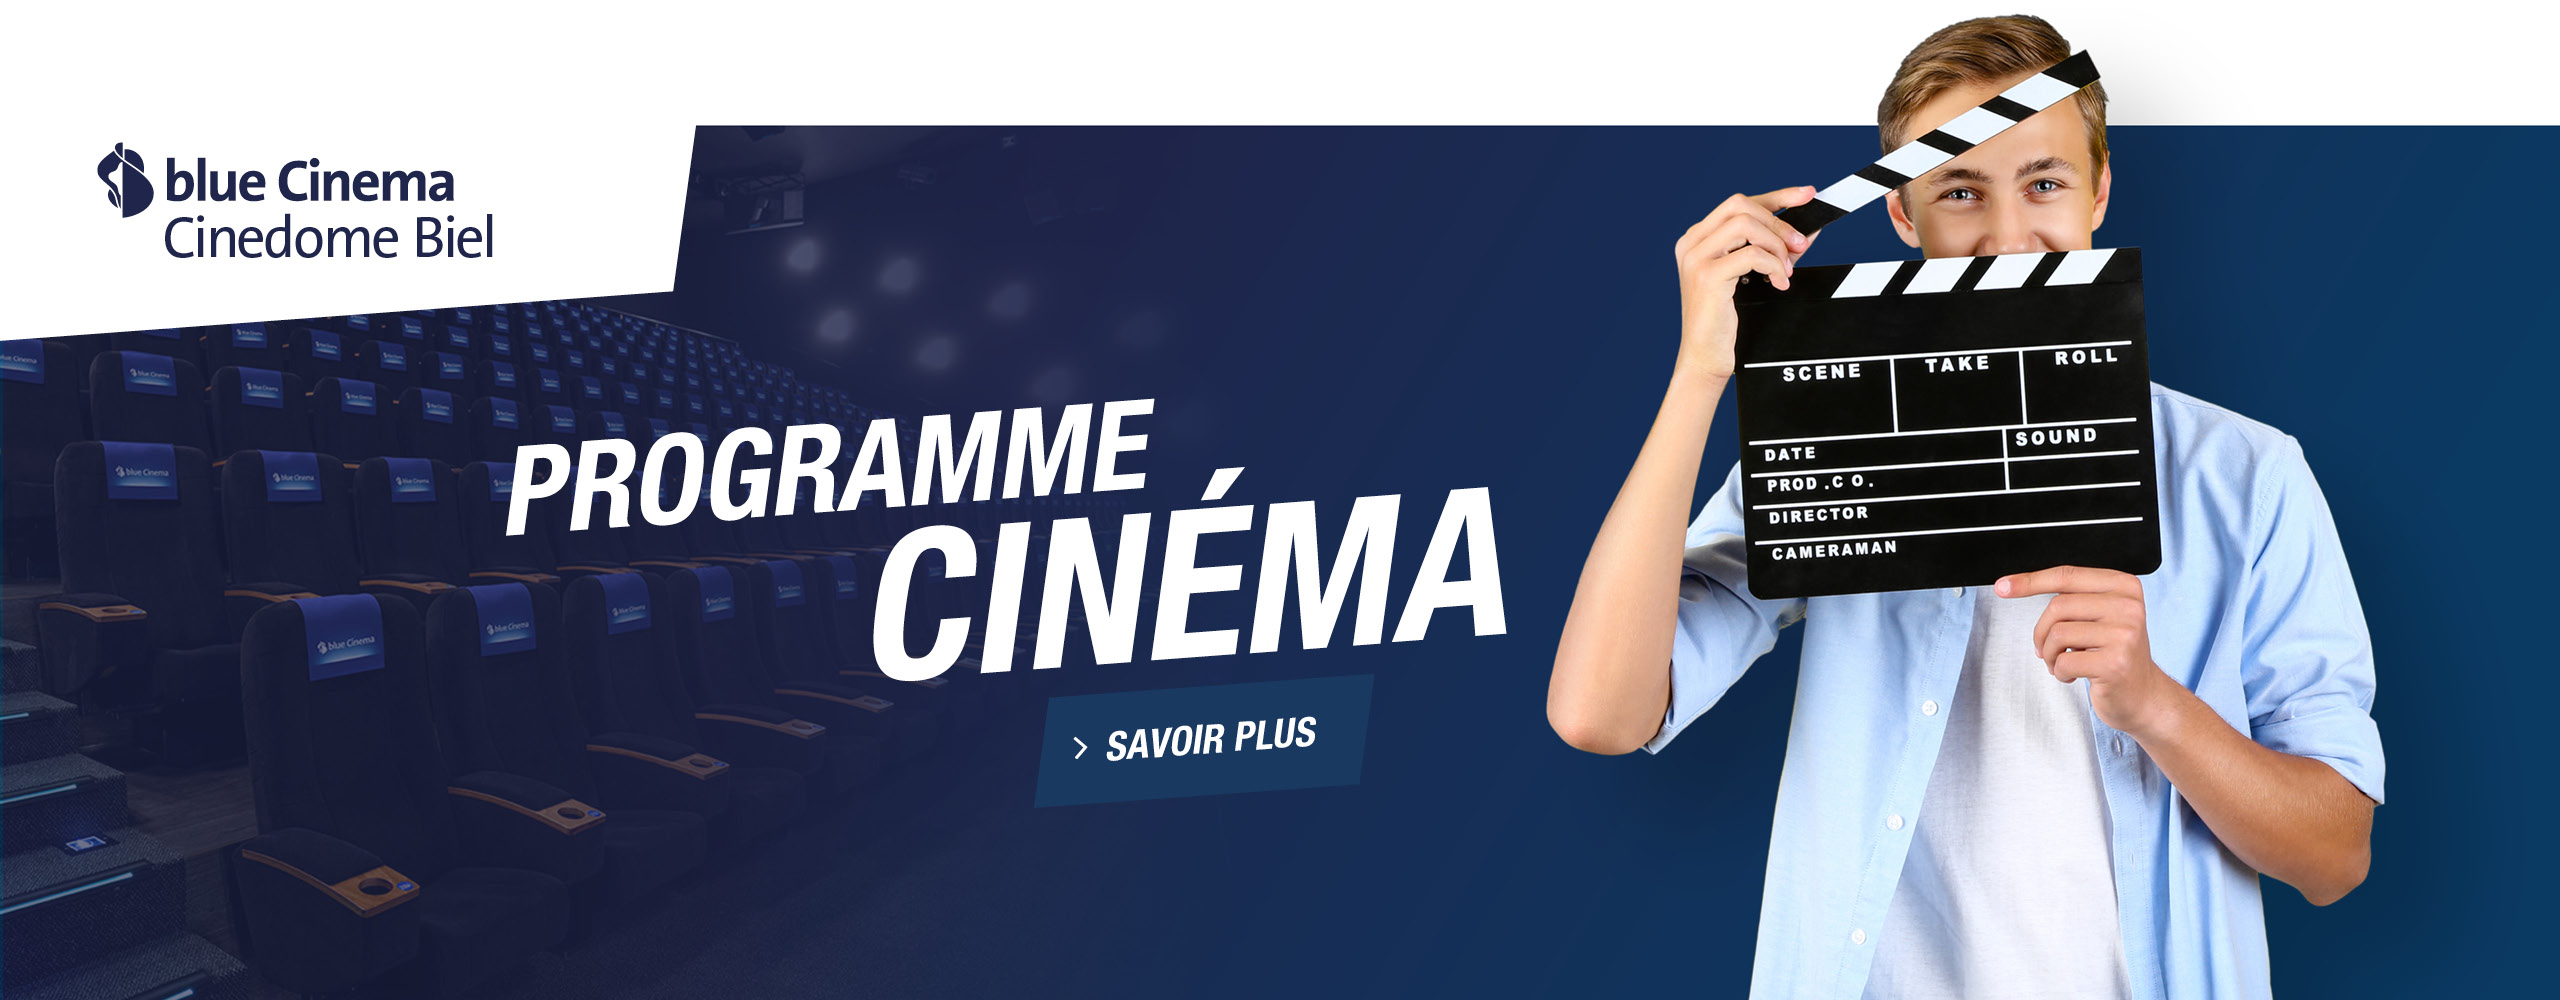 blue-cinema-cinedome-biel-teaser-shopping-les-stades-fr-slide1